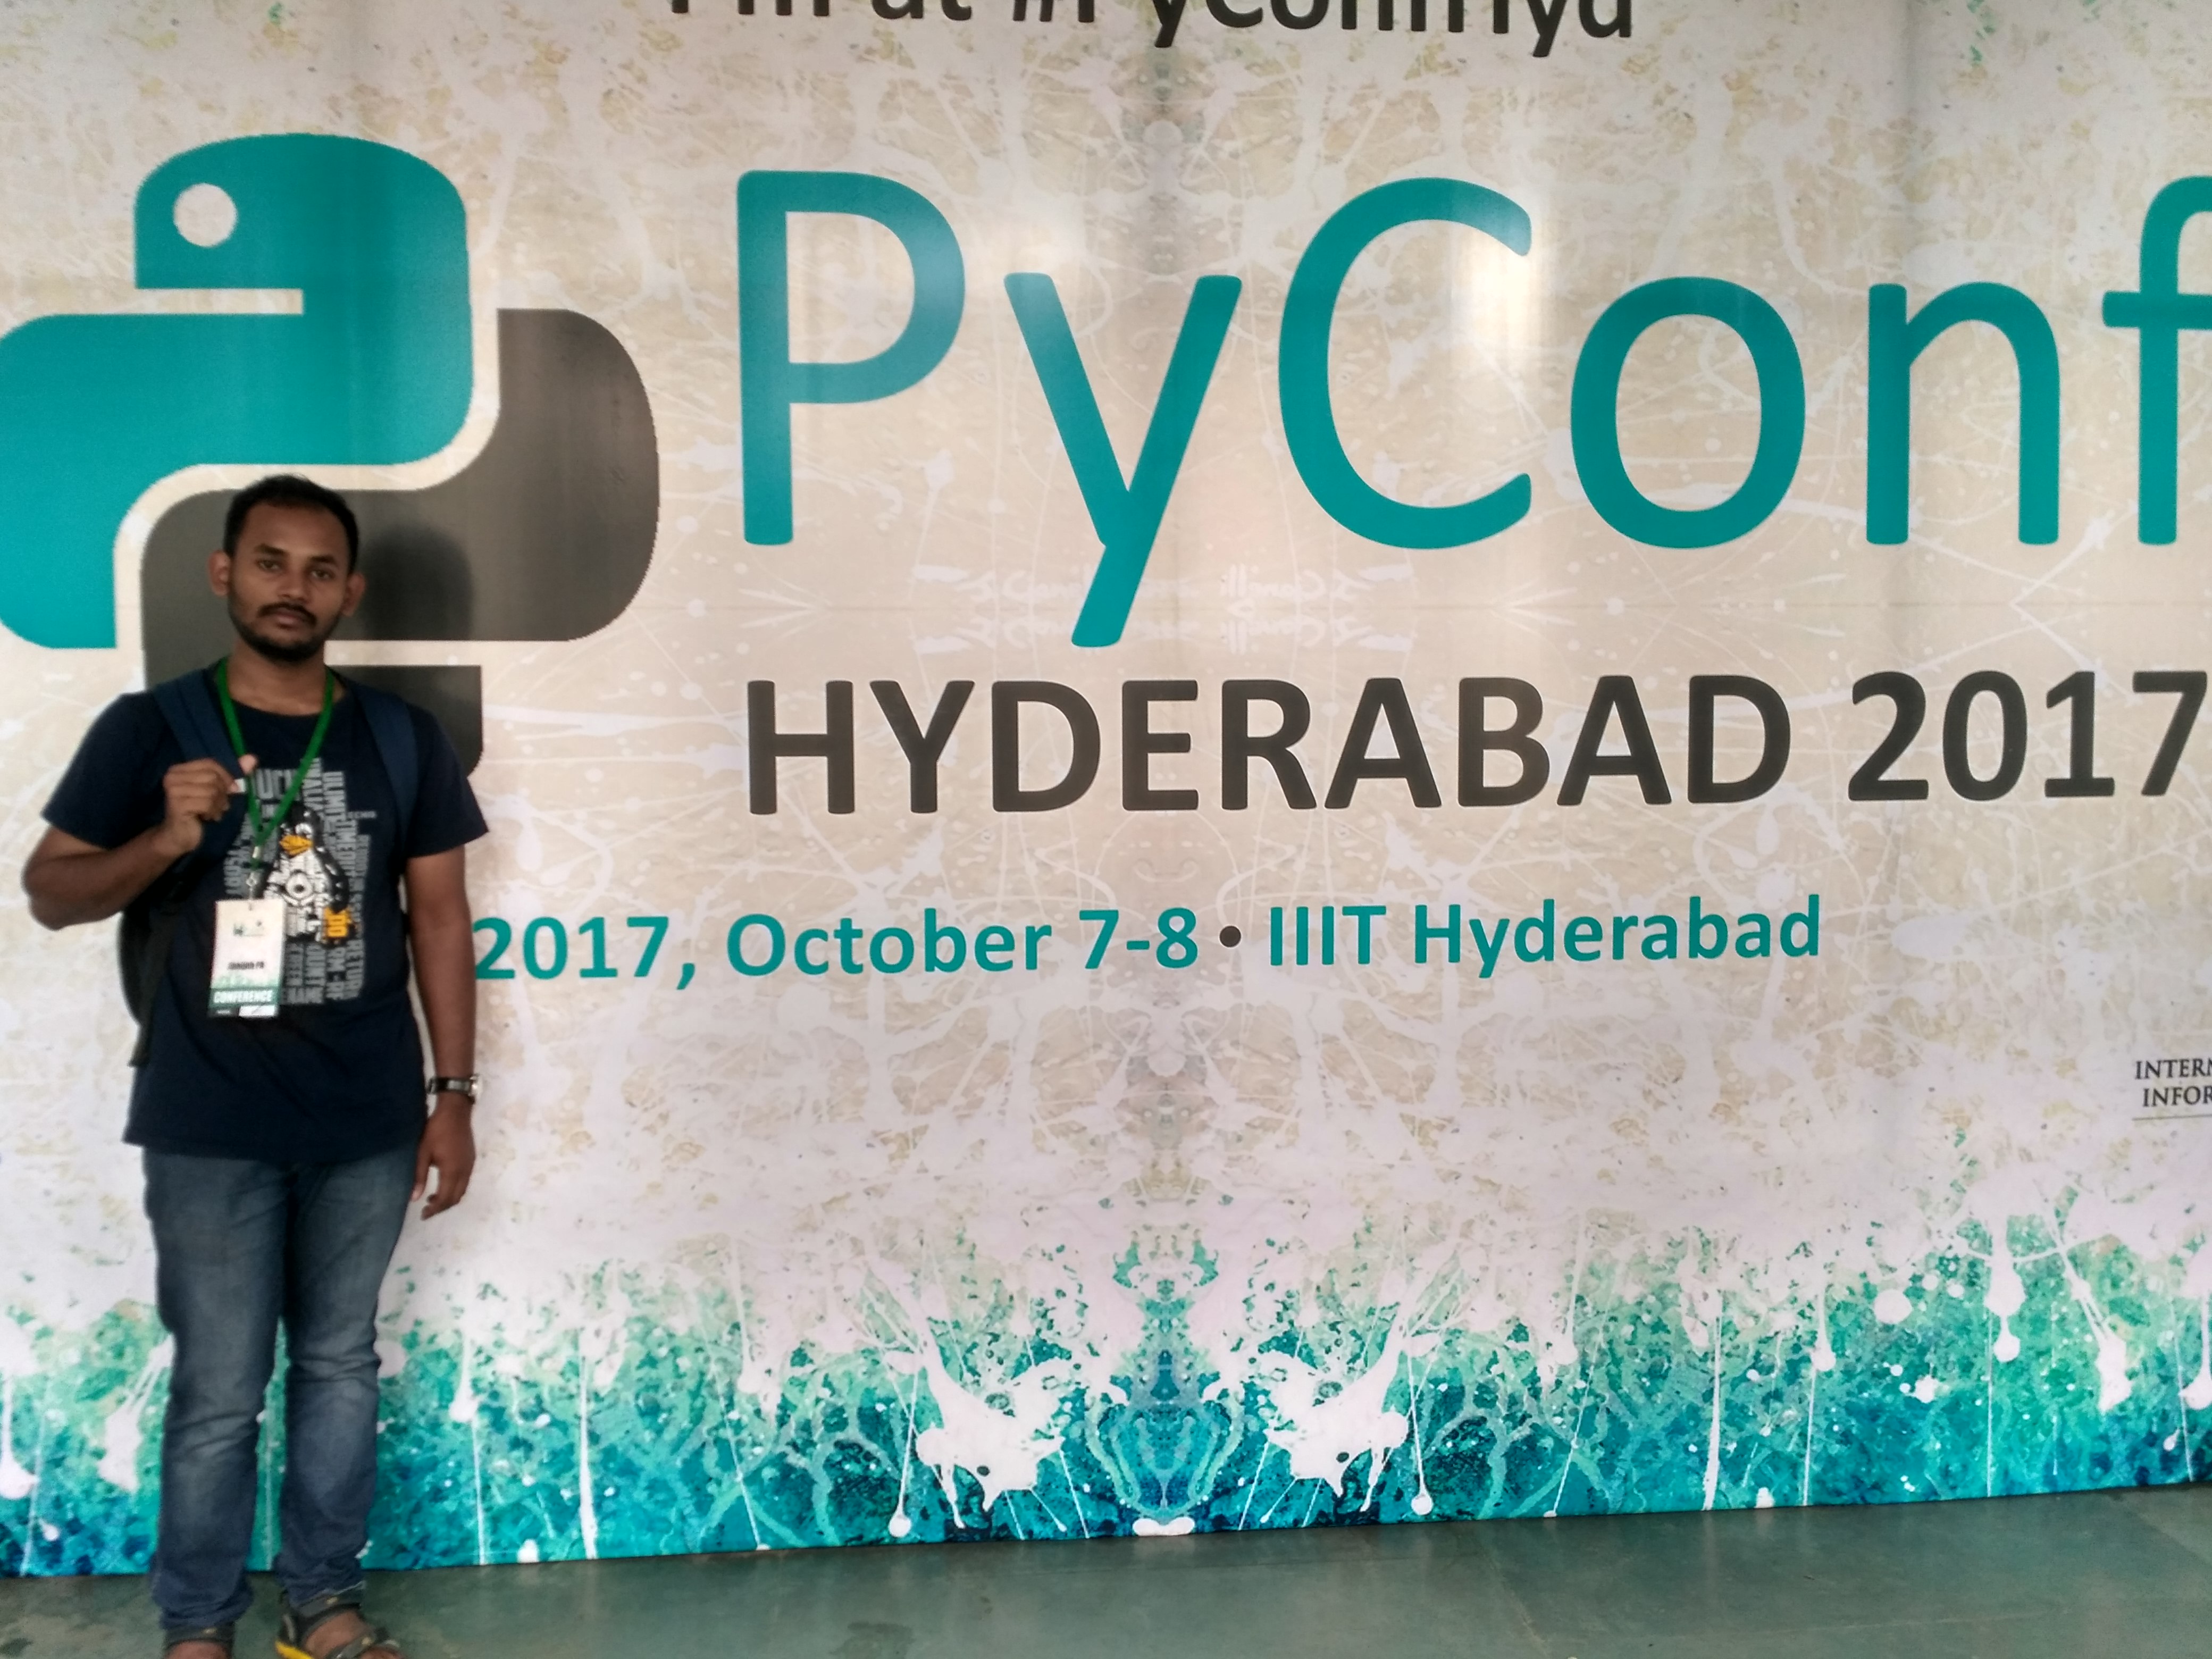 Hyderabad Pyconf